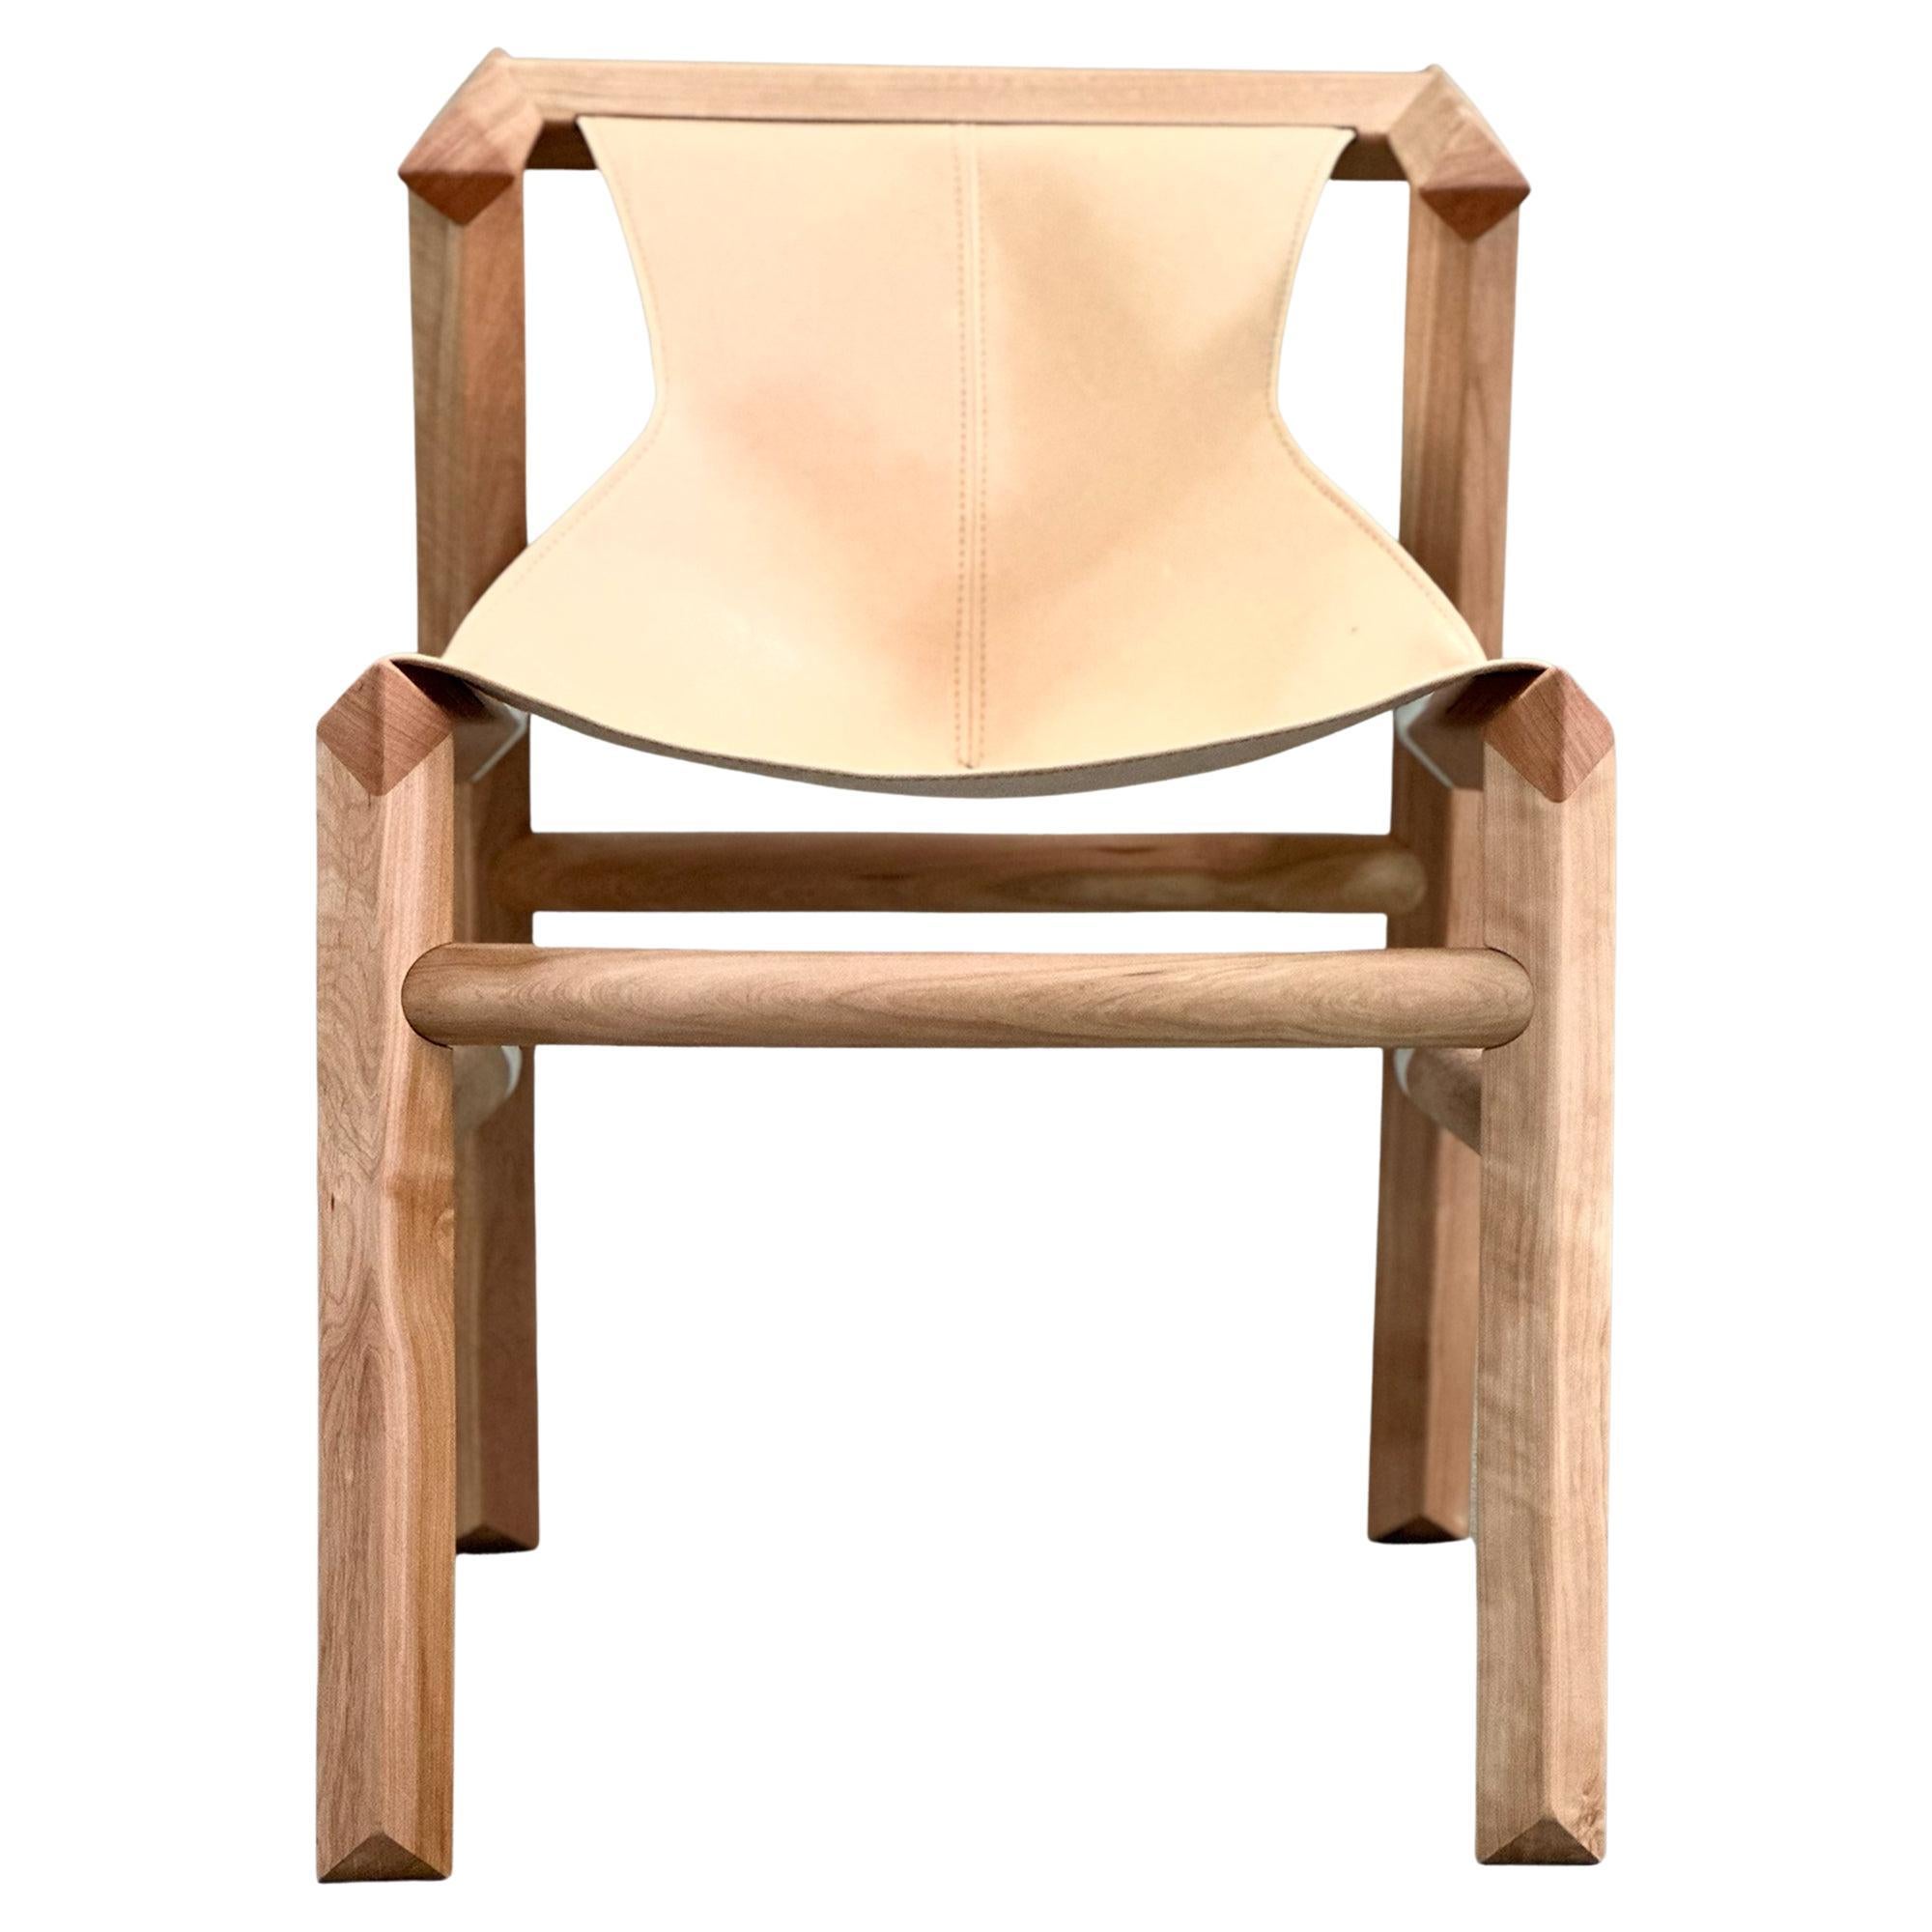 Die Designsprache und der Konstruktionsprozess des Stuhls basieren auf der Slow-Made-Philosophie, die traditionelle und moderne Techniken, 3D-gedruckte Verbindungen, digitale Fertigung und Handarbeit miteinander verbindet.
Jeder Stuhl wird von